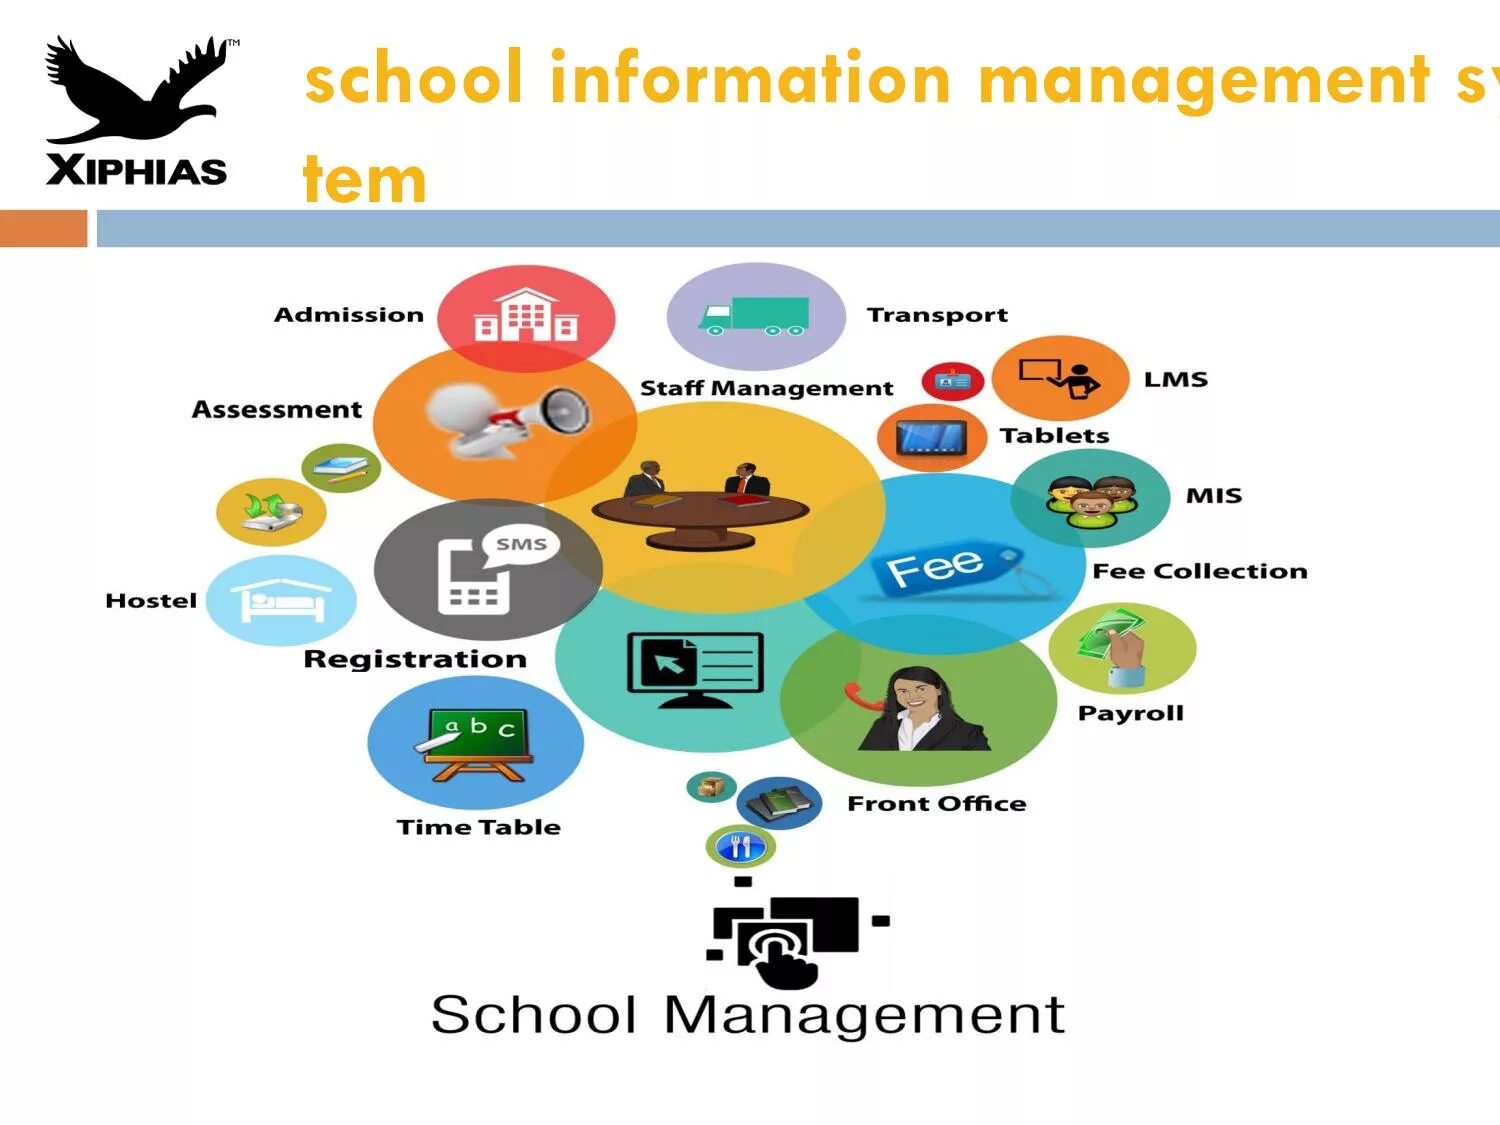 Management information system. Management information Systems. LMS Learning Management System. School Management System. School information Management System.